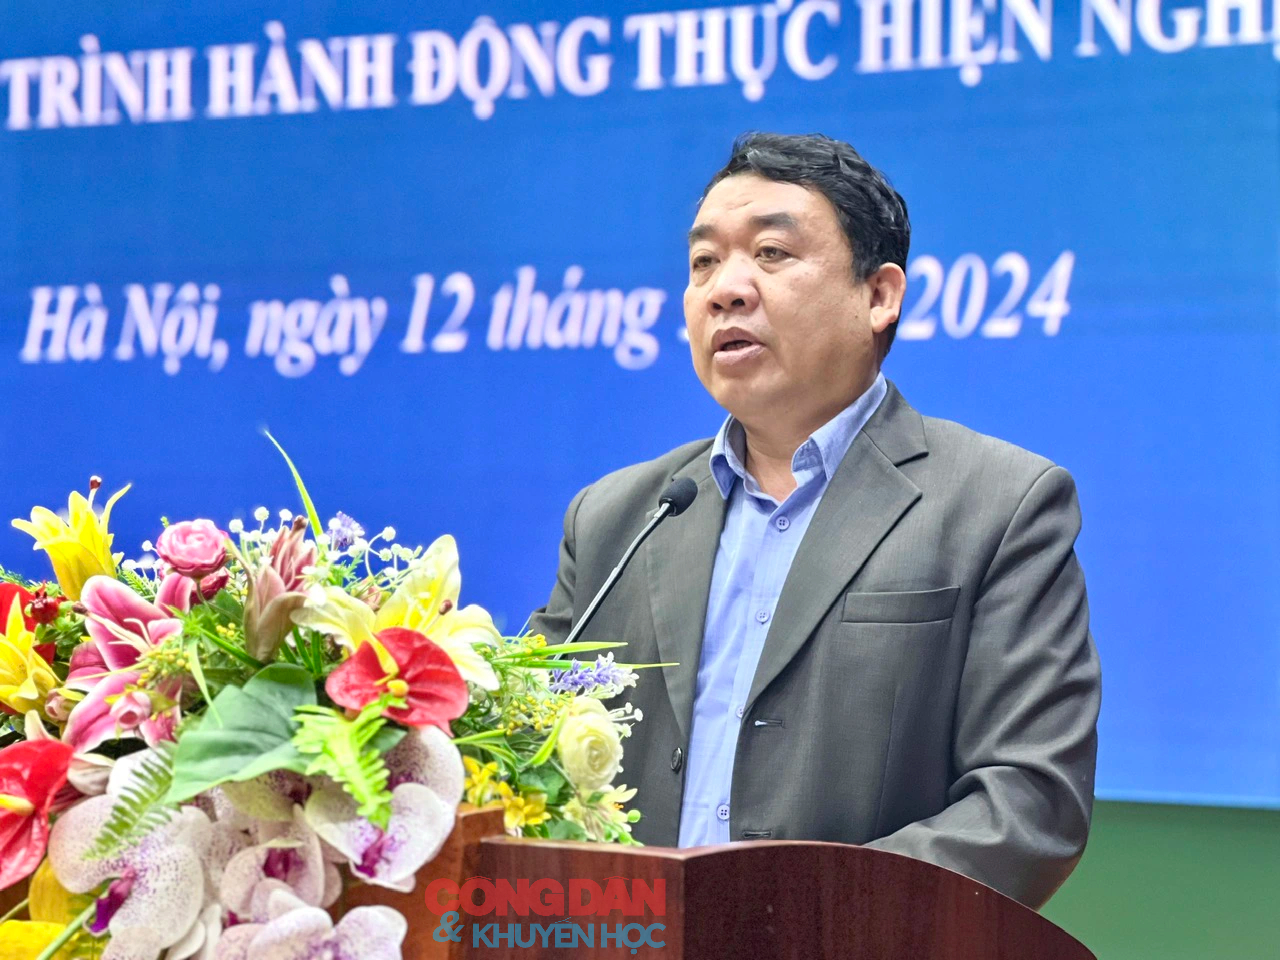 Thủ đô Hà Nội quyết tâm đạt danh hiệu &quot;Thành phố học tập&quot;